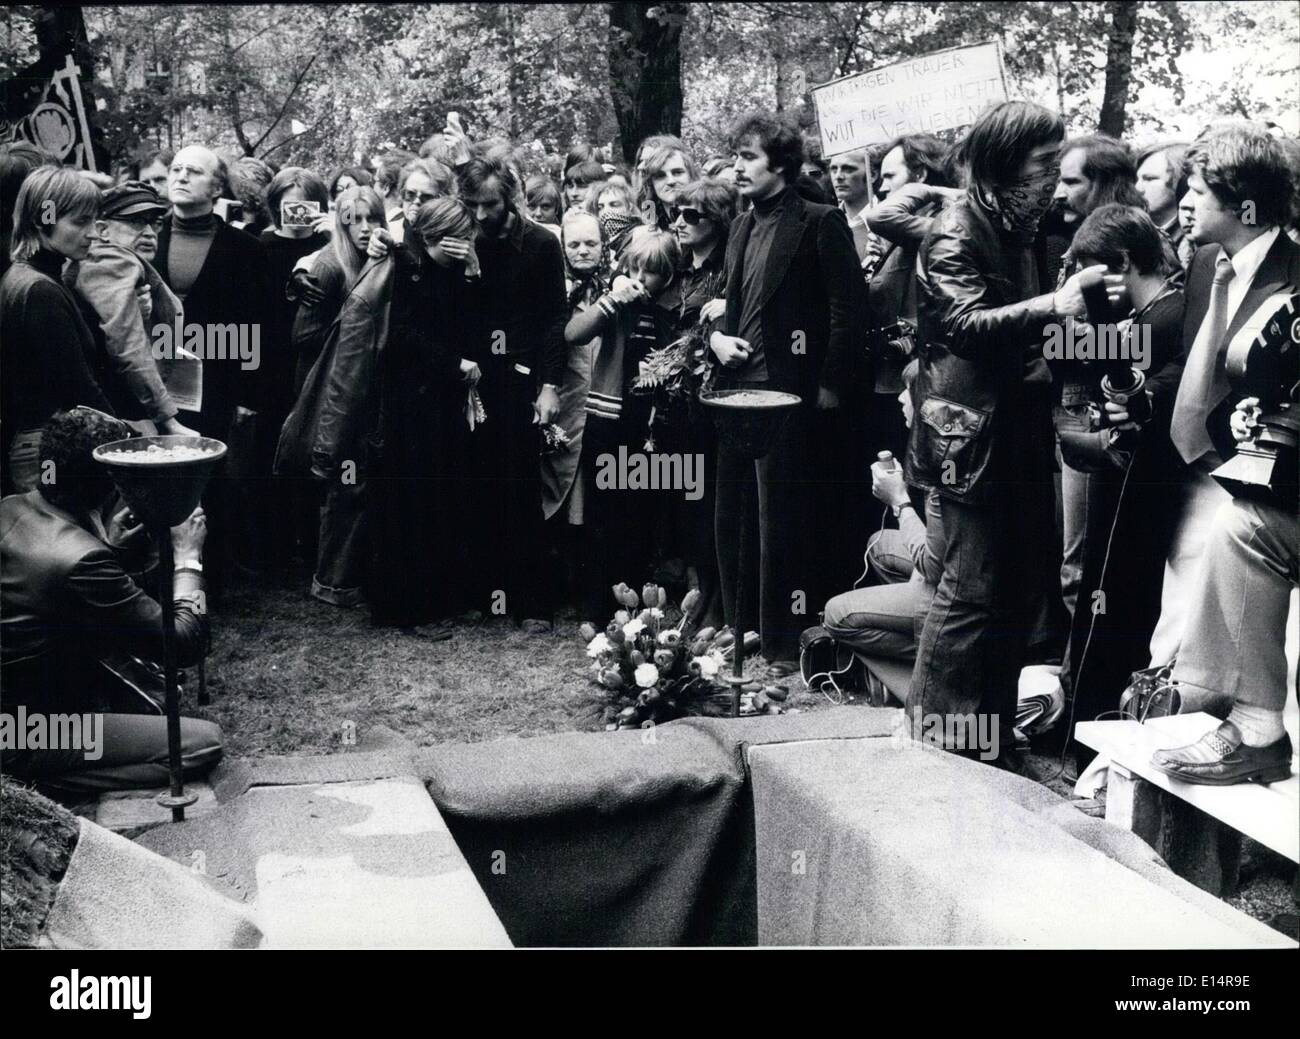 Apr. 18, 2012 - anarchico Ulrike Meinhof sepolto a Berlino: Ulrike Meinhof (Ulrike Meinhof), membro leader dell'anarchico tedesco ''/Baader Meinhof'' group, che ha commesso il suicidio per impiccagione se stessa con un asciugamano nella sua cella della prigione Stuttgart-Stammheim il 9 maggio 1976 fu sepolto a Berlino il 15 maggio. Circa 4000 persone accompagnate sul suo ultimo viaggio. Dopo il funerale ha avuto luogo una dimostrazione di 45000 persone attraverso le strade di Berlino. La foto mostra il funerale di Ulrike Meinhof alla Santissima Trinità nel cimitero di Berlino. A sinistra la figliastra di Ulrike Meinhof, 3 Foto Stock